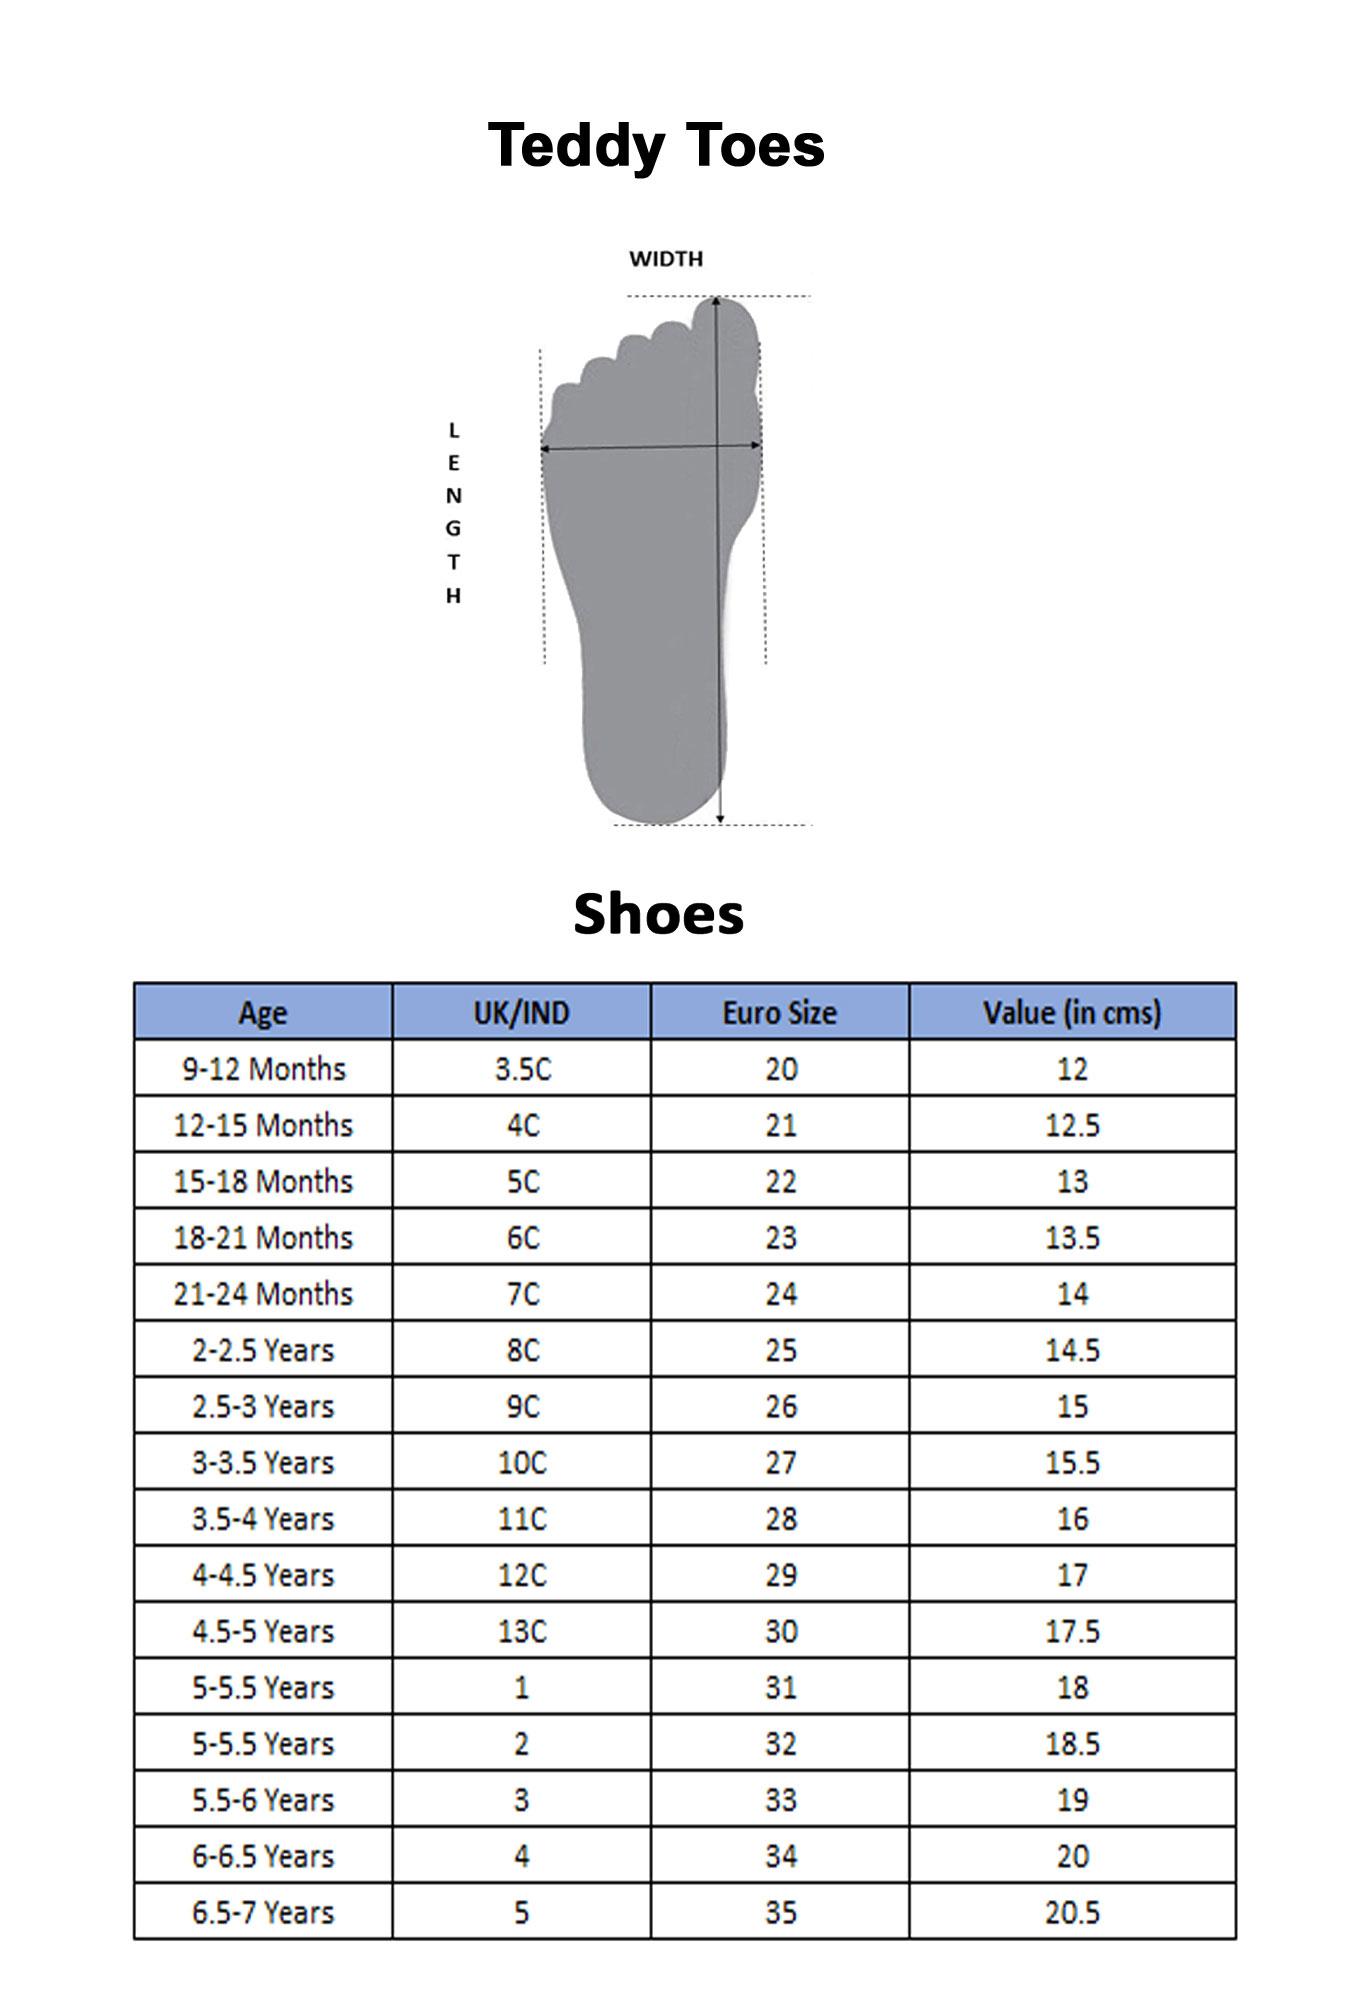 8c shoes age